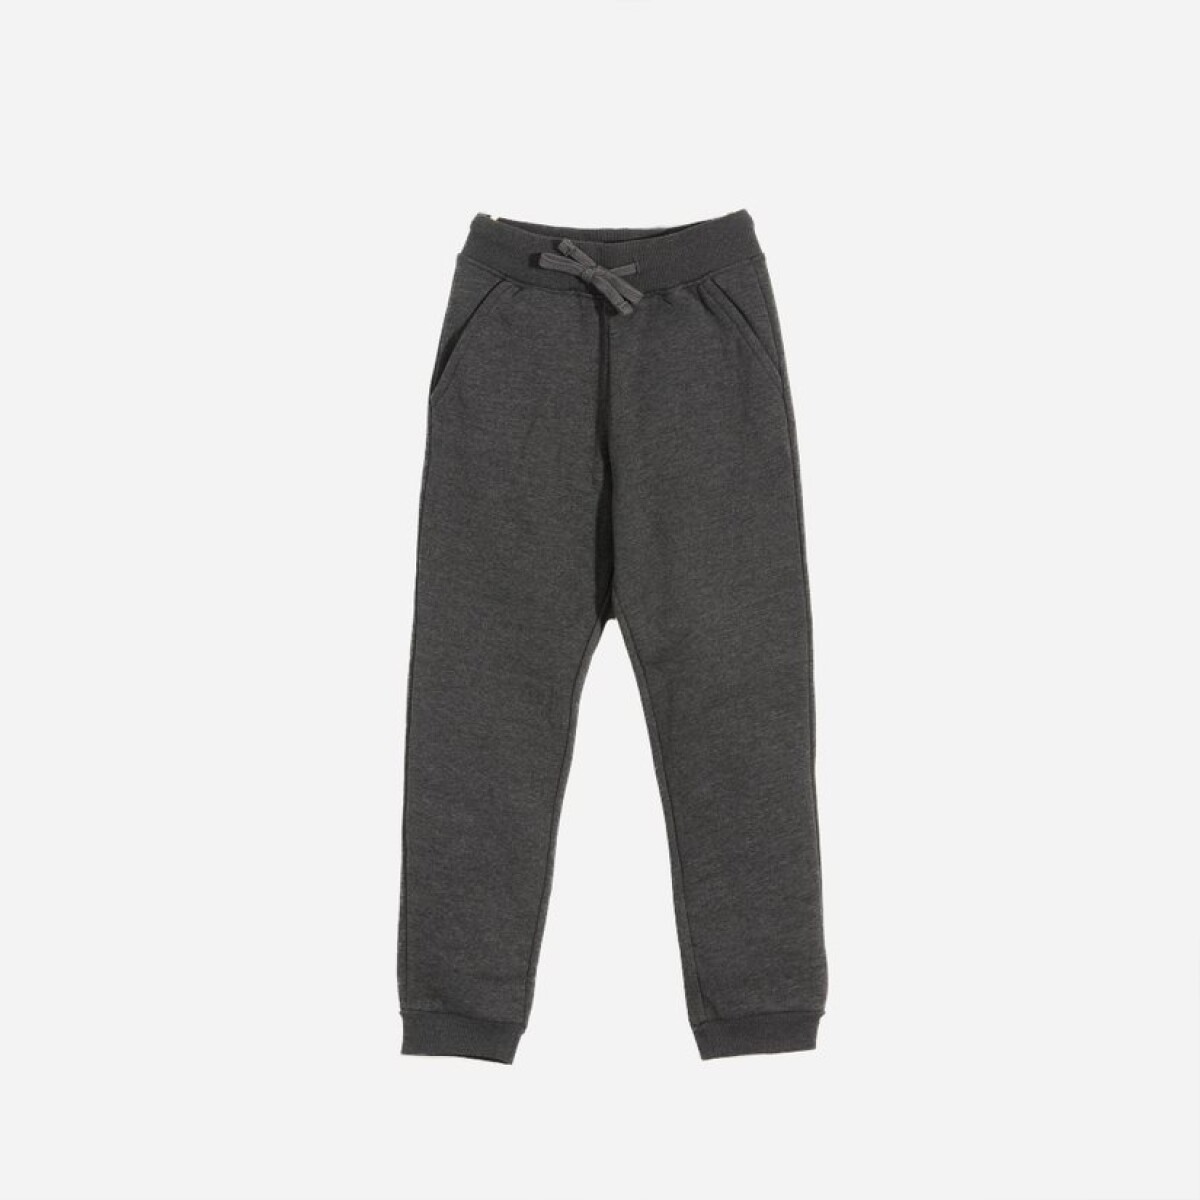 Pantalon deportivo con puño - Niño - GRIS OSCURO 